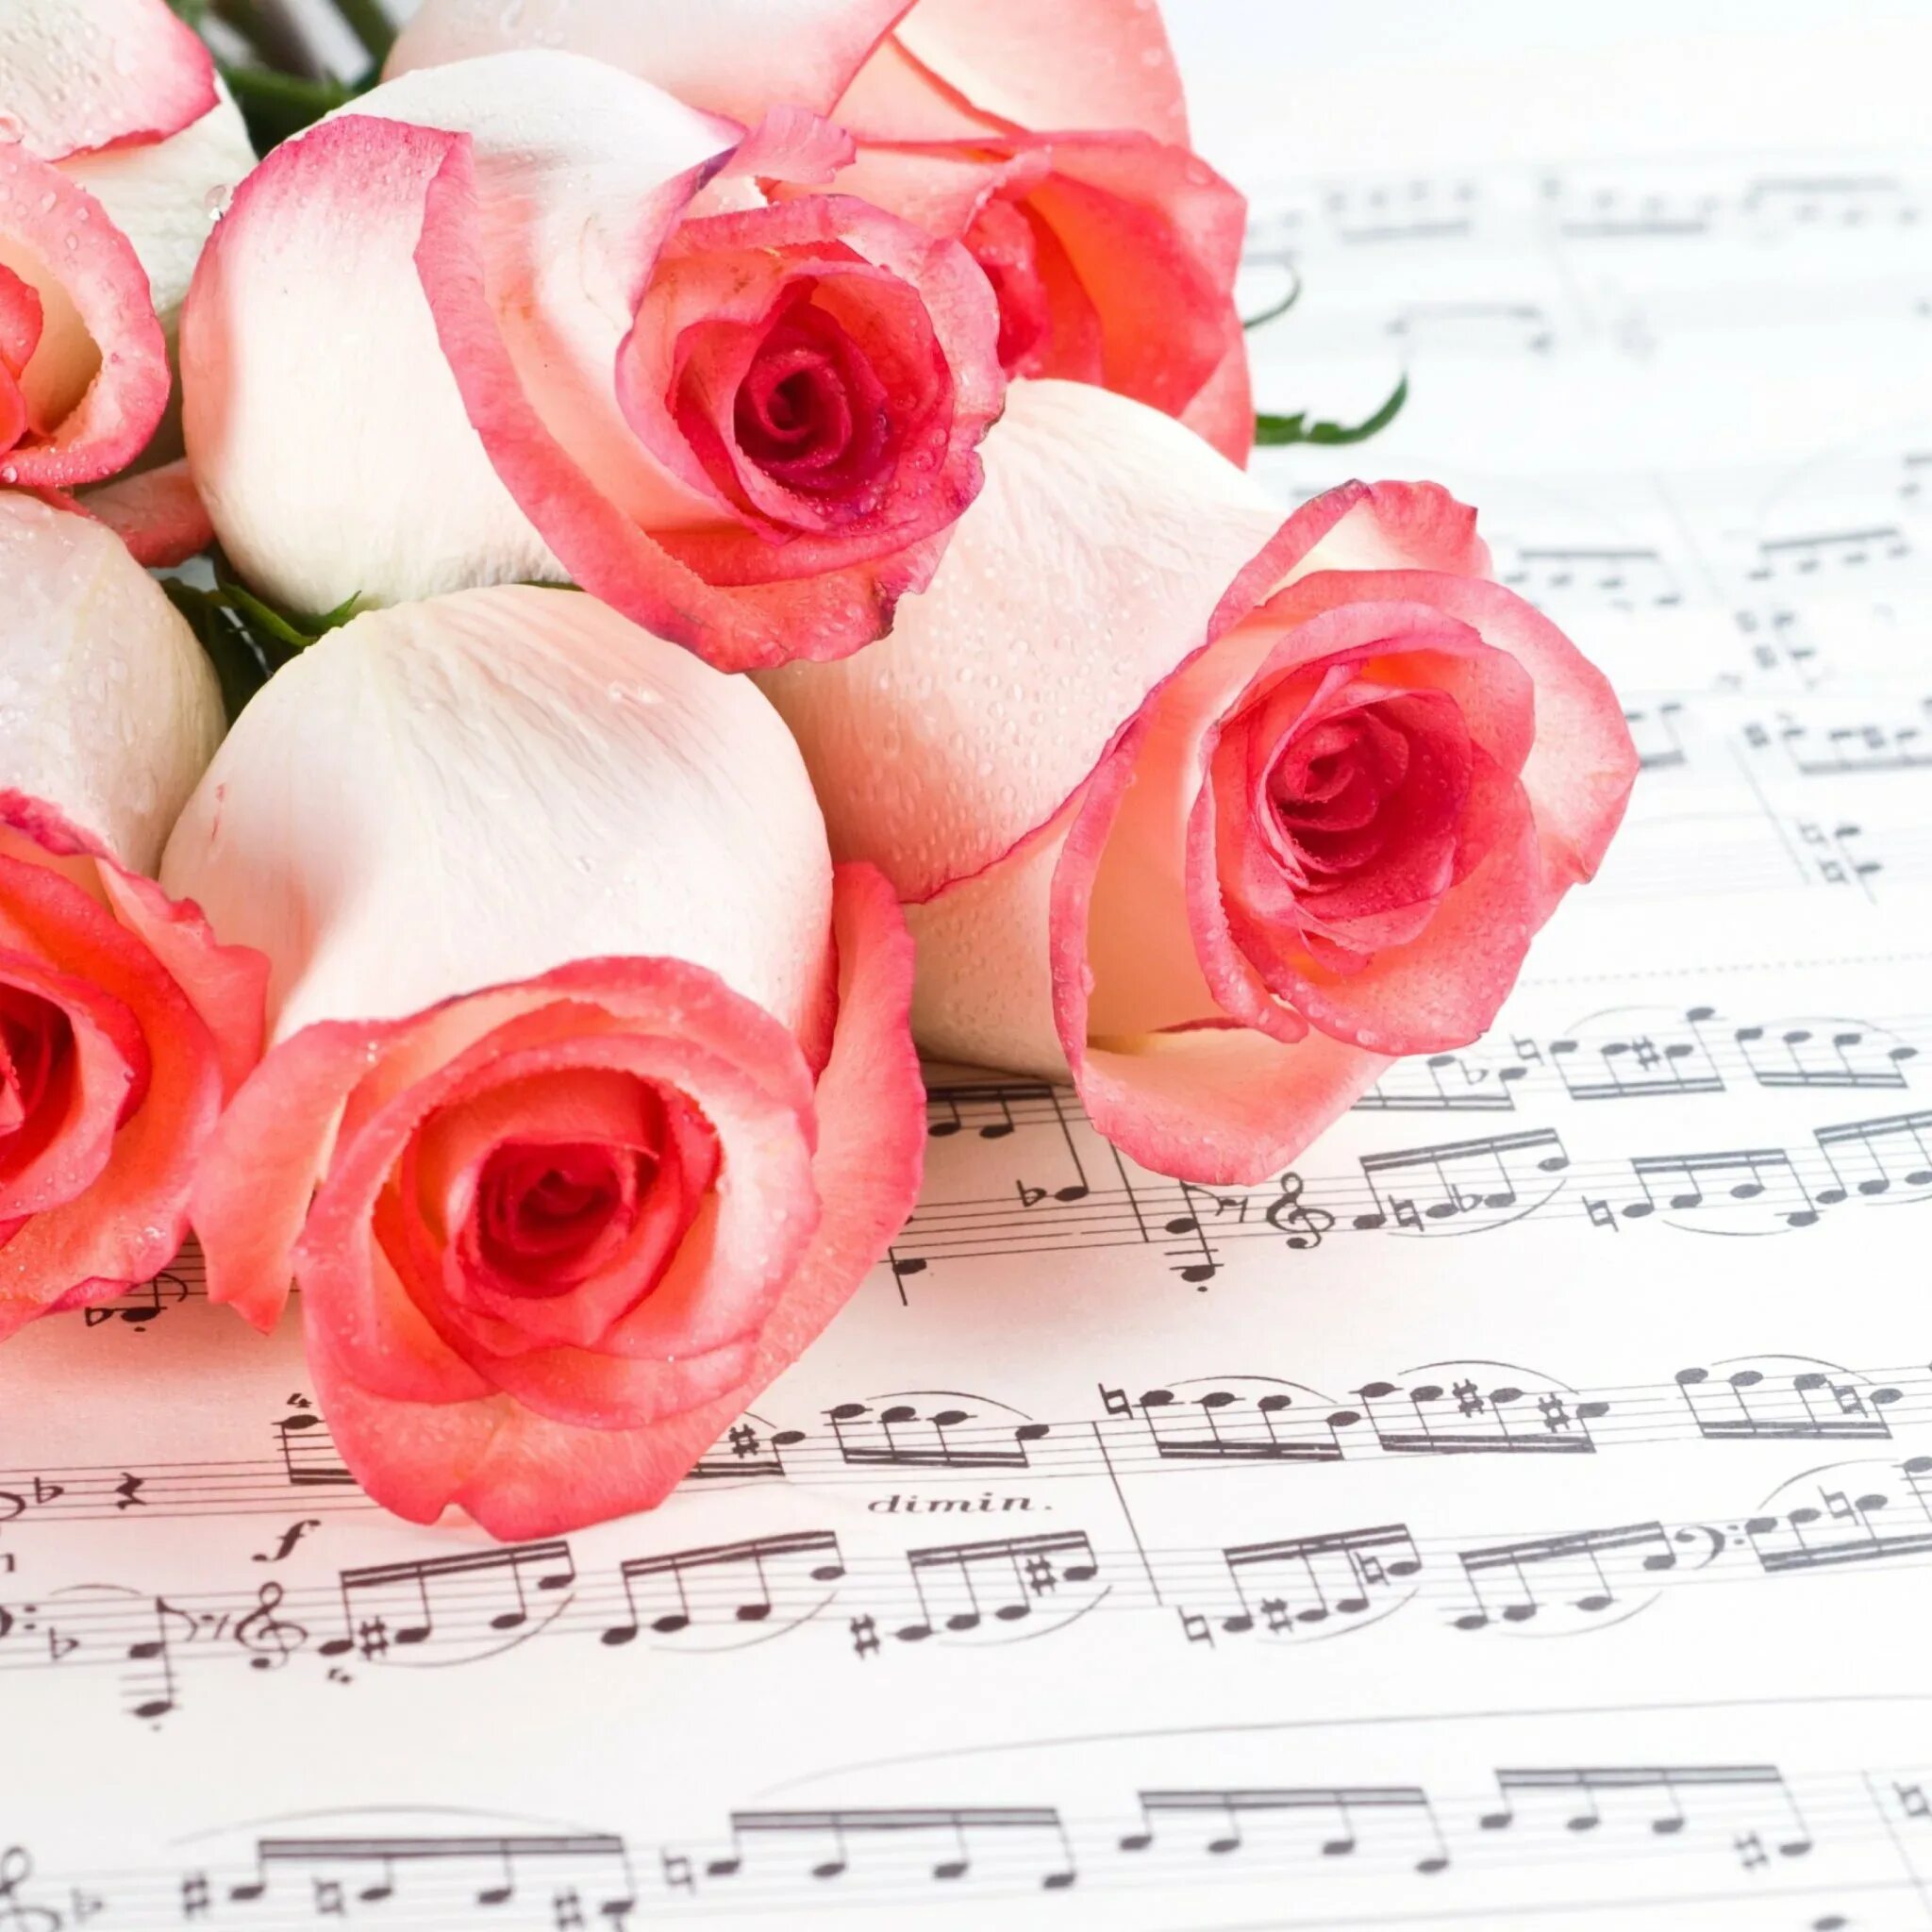 Музыкальный цветок. Ноты и цветы. Открытка учителю музыки. Открытка музыканту. День учителя поздравление учителю музыки